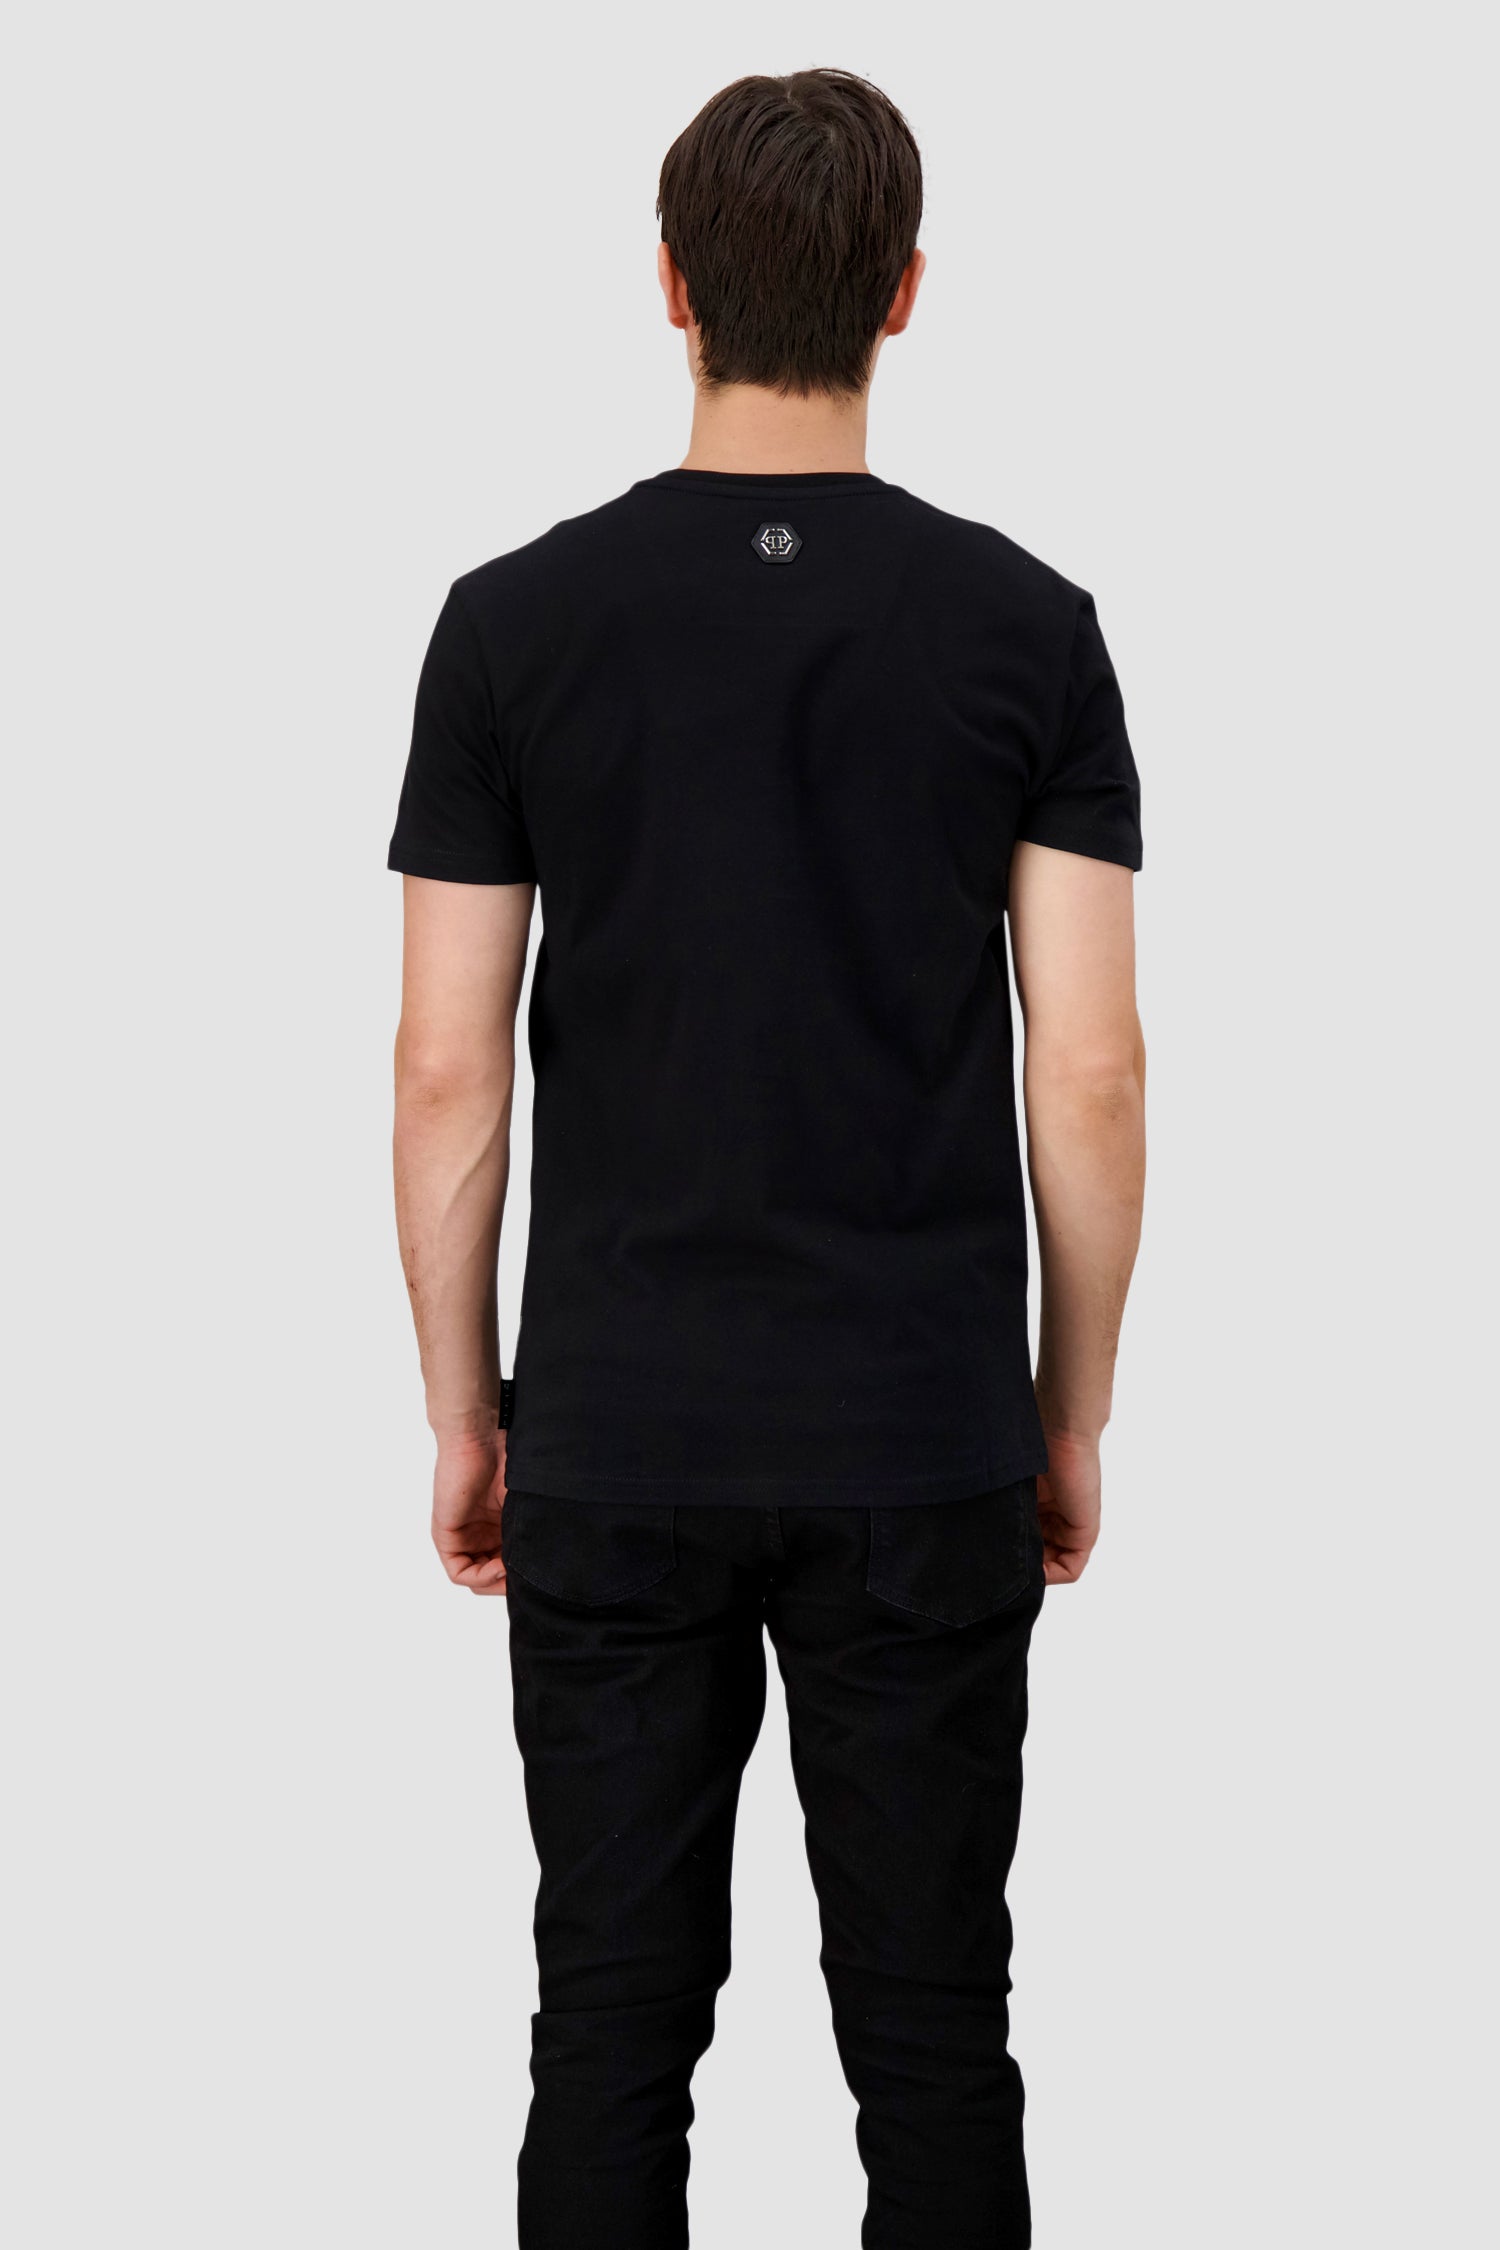 Philipp Plein Black SS Hexagon Round Neck T-Shirt